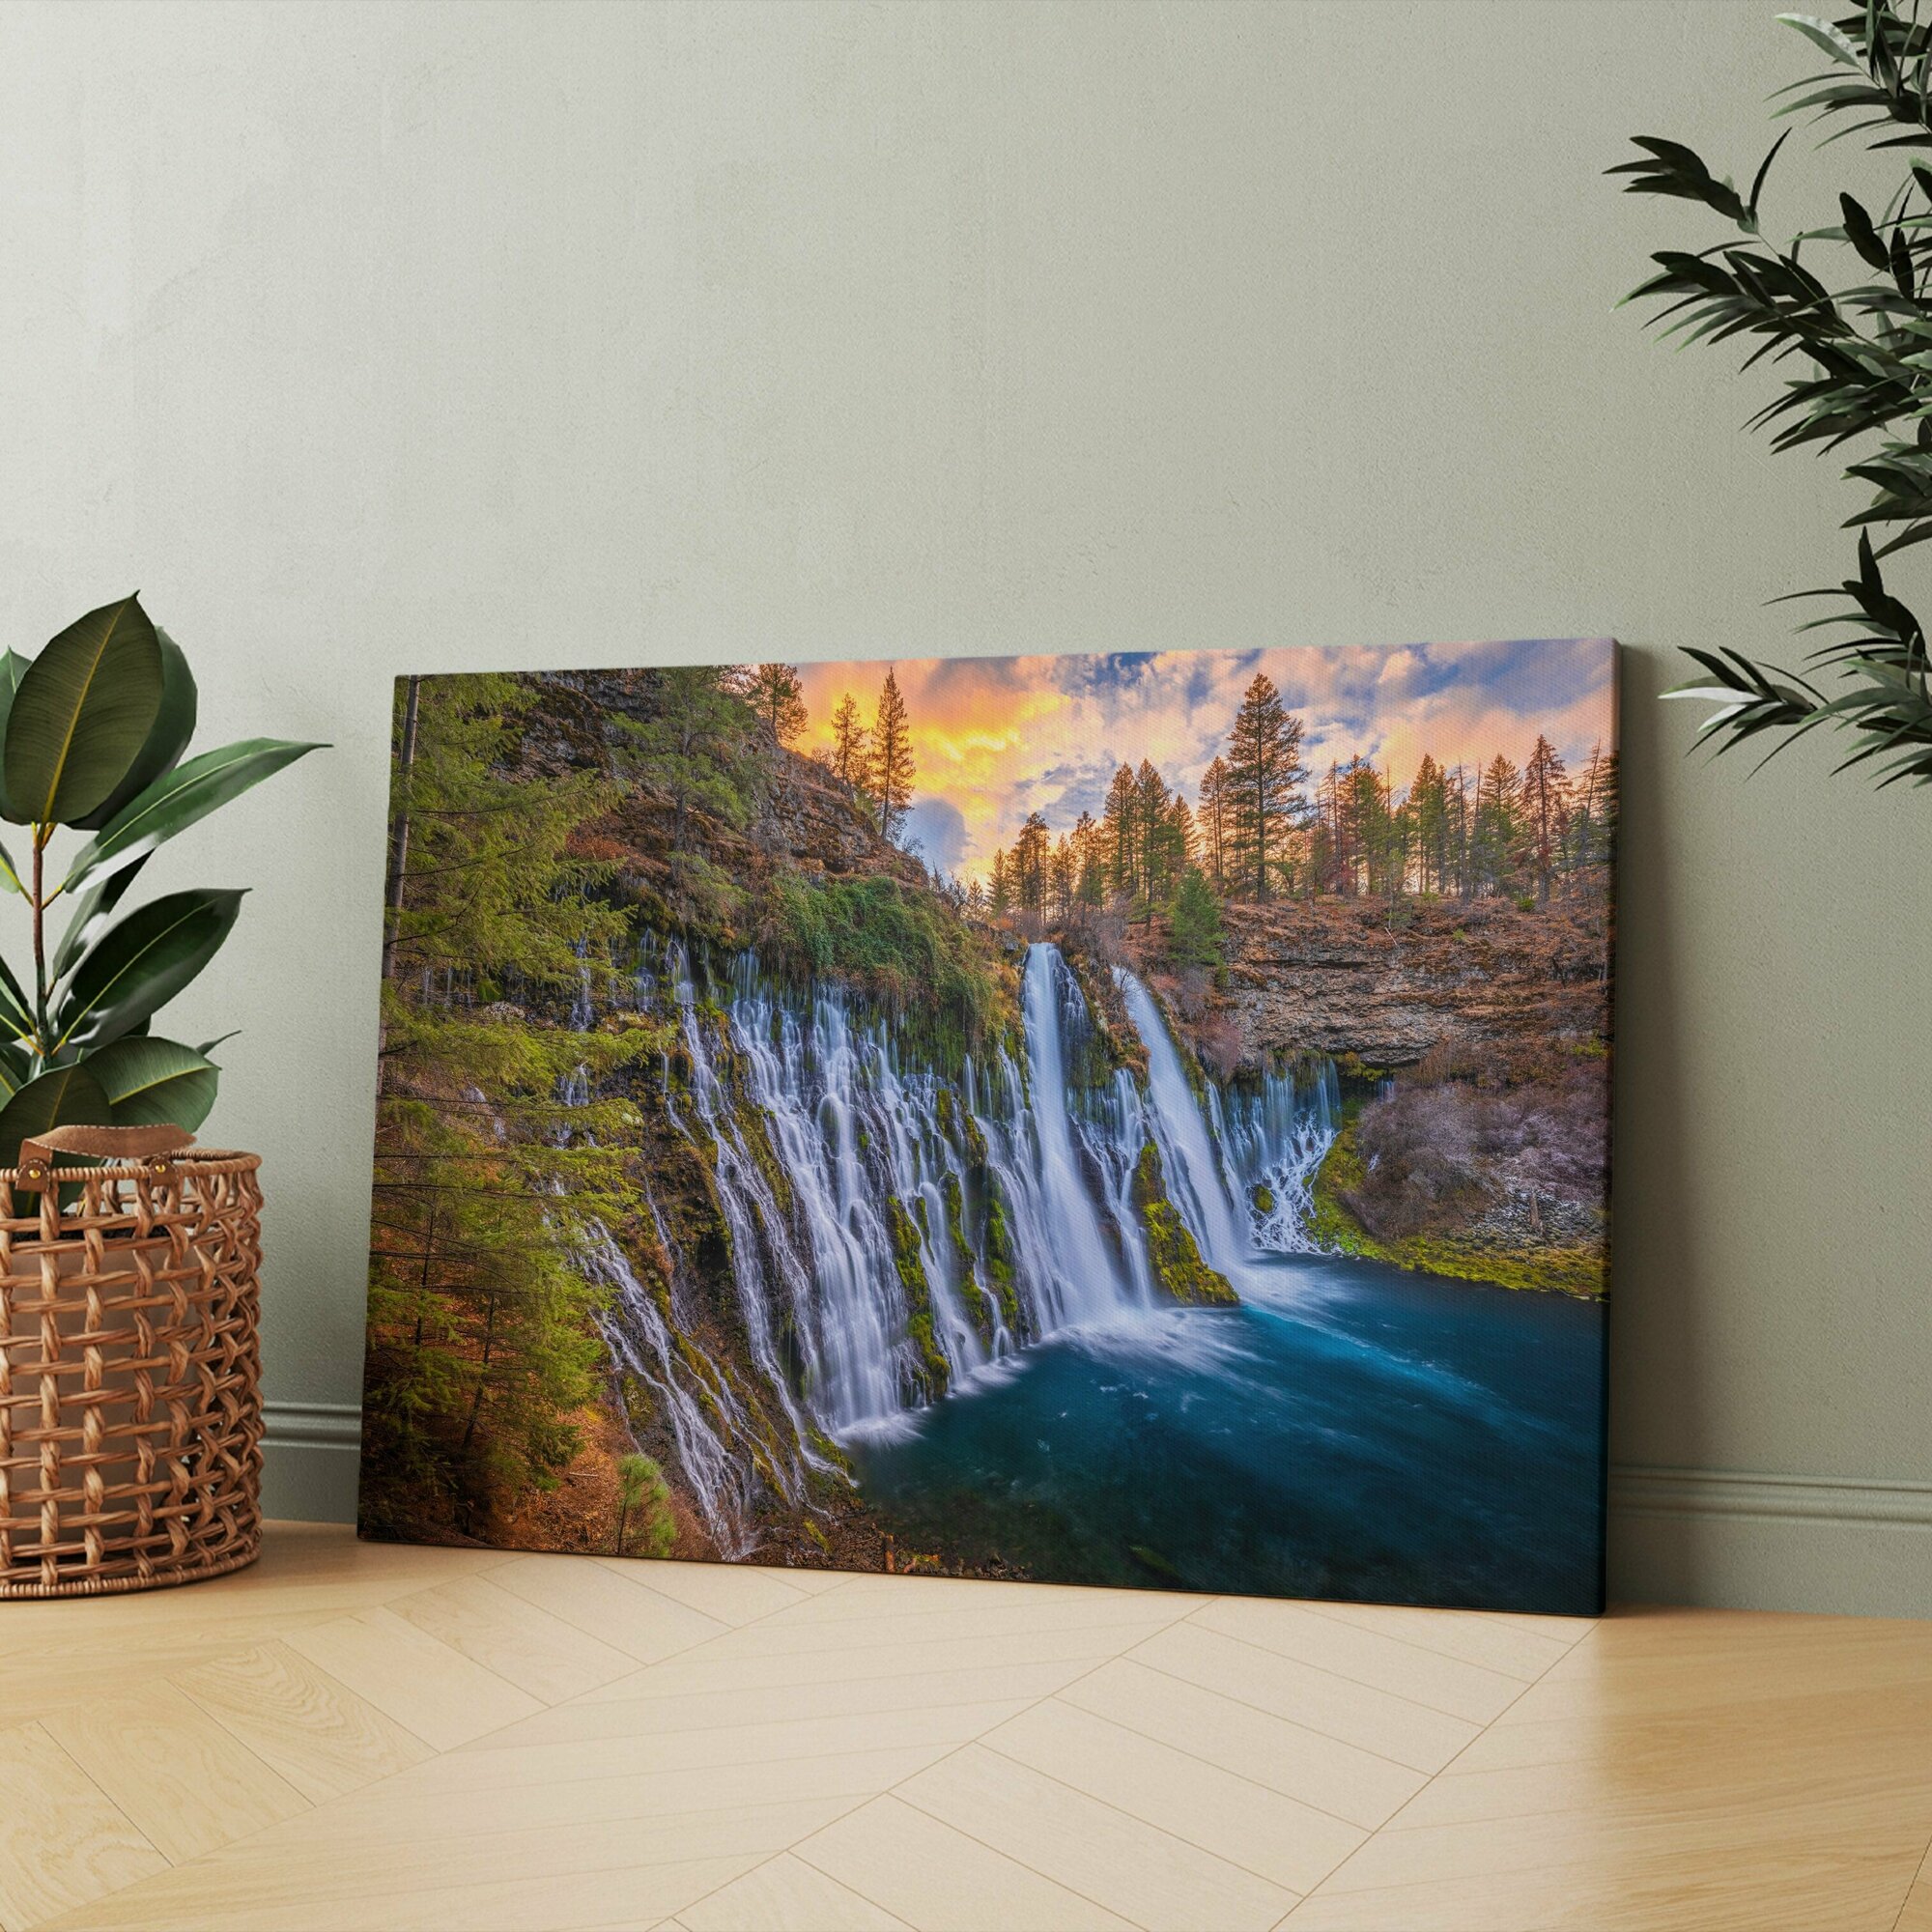 Картина на холсте "Большой водопад, по сторонам которого стекает вода" 40x60 см. Интерьерная, на стену.